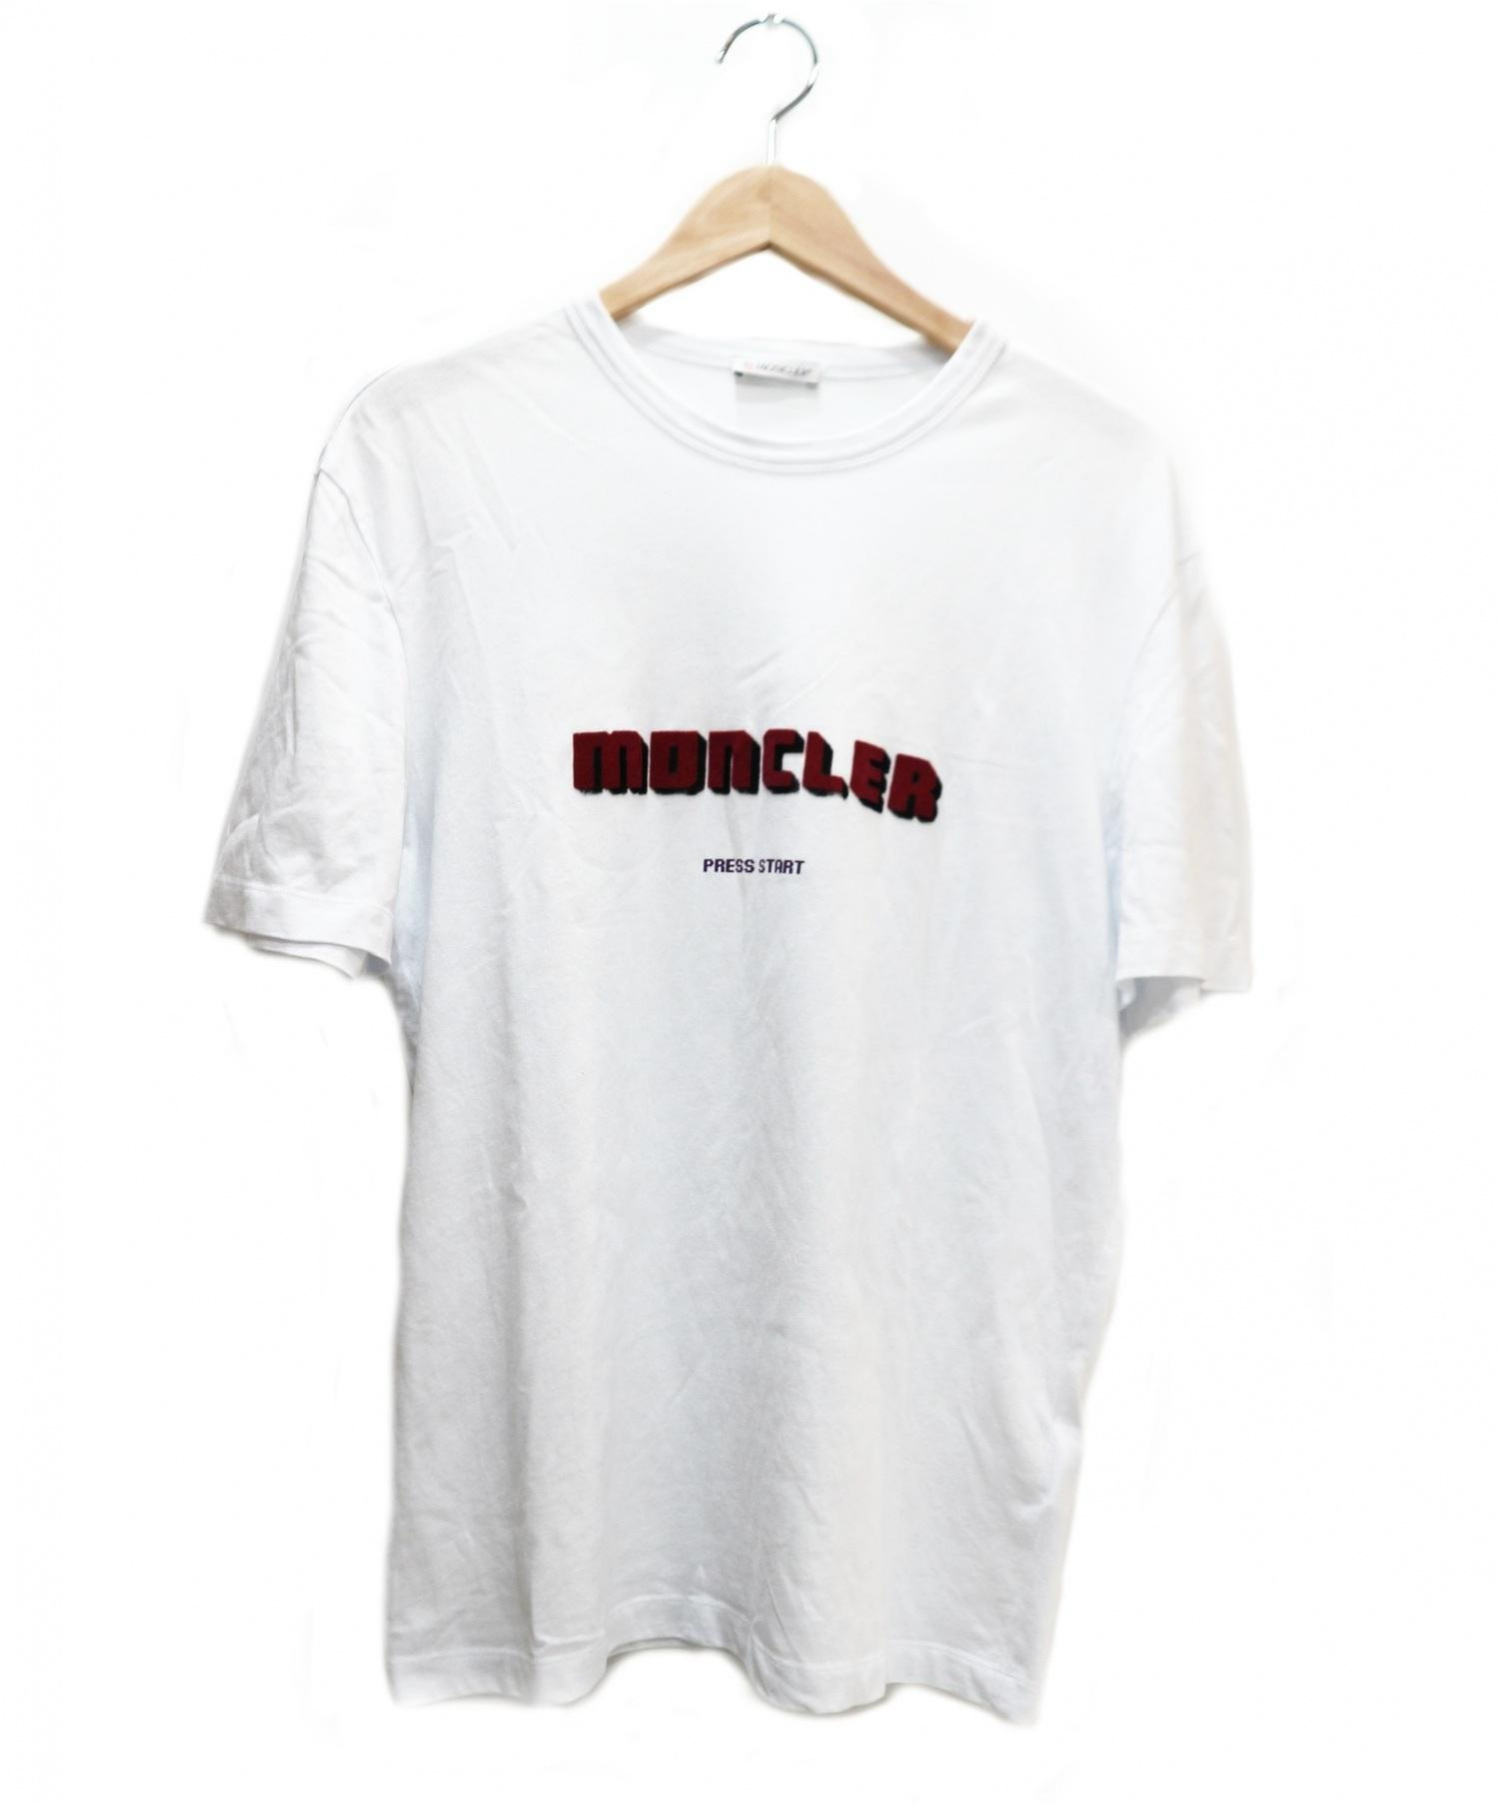 MONCLER (モンクレール) ロゴプリントTシャツ ホワイト×ボルドー 